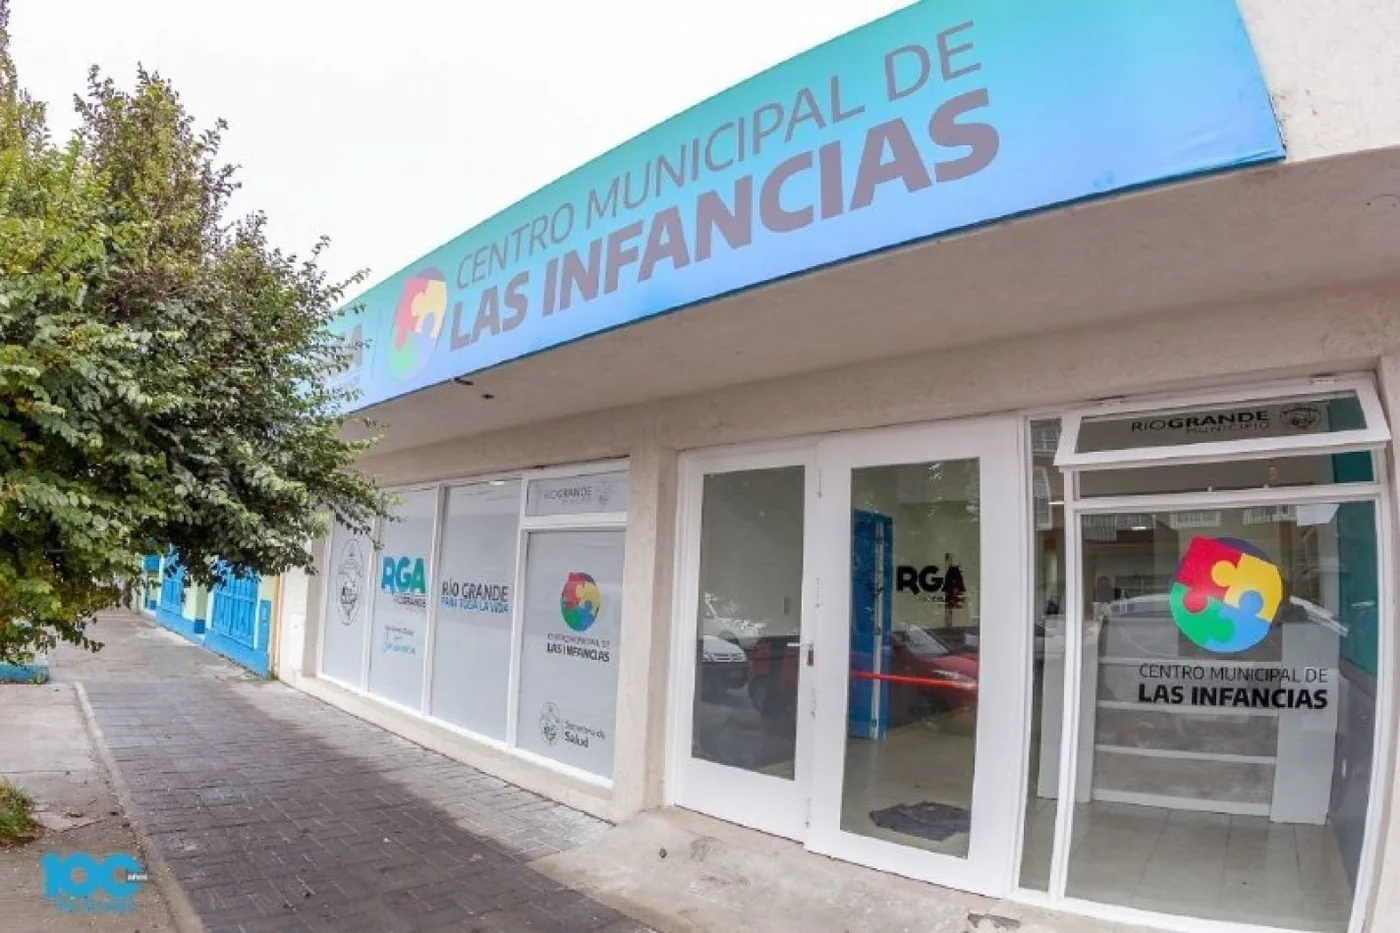 Centro Municipal de las Infancias de la ciudad de Río Grande.